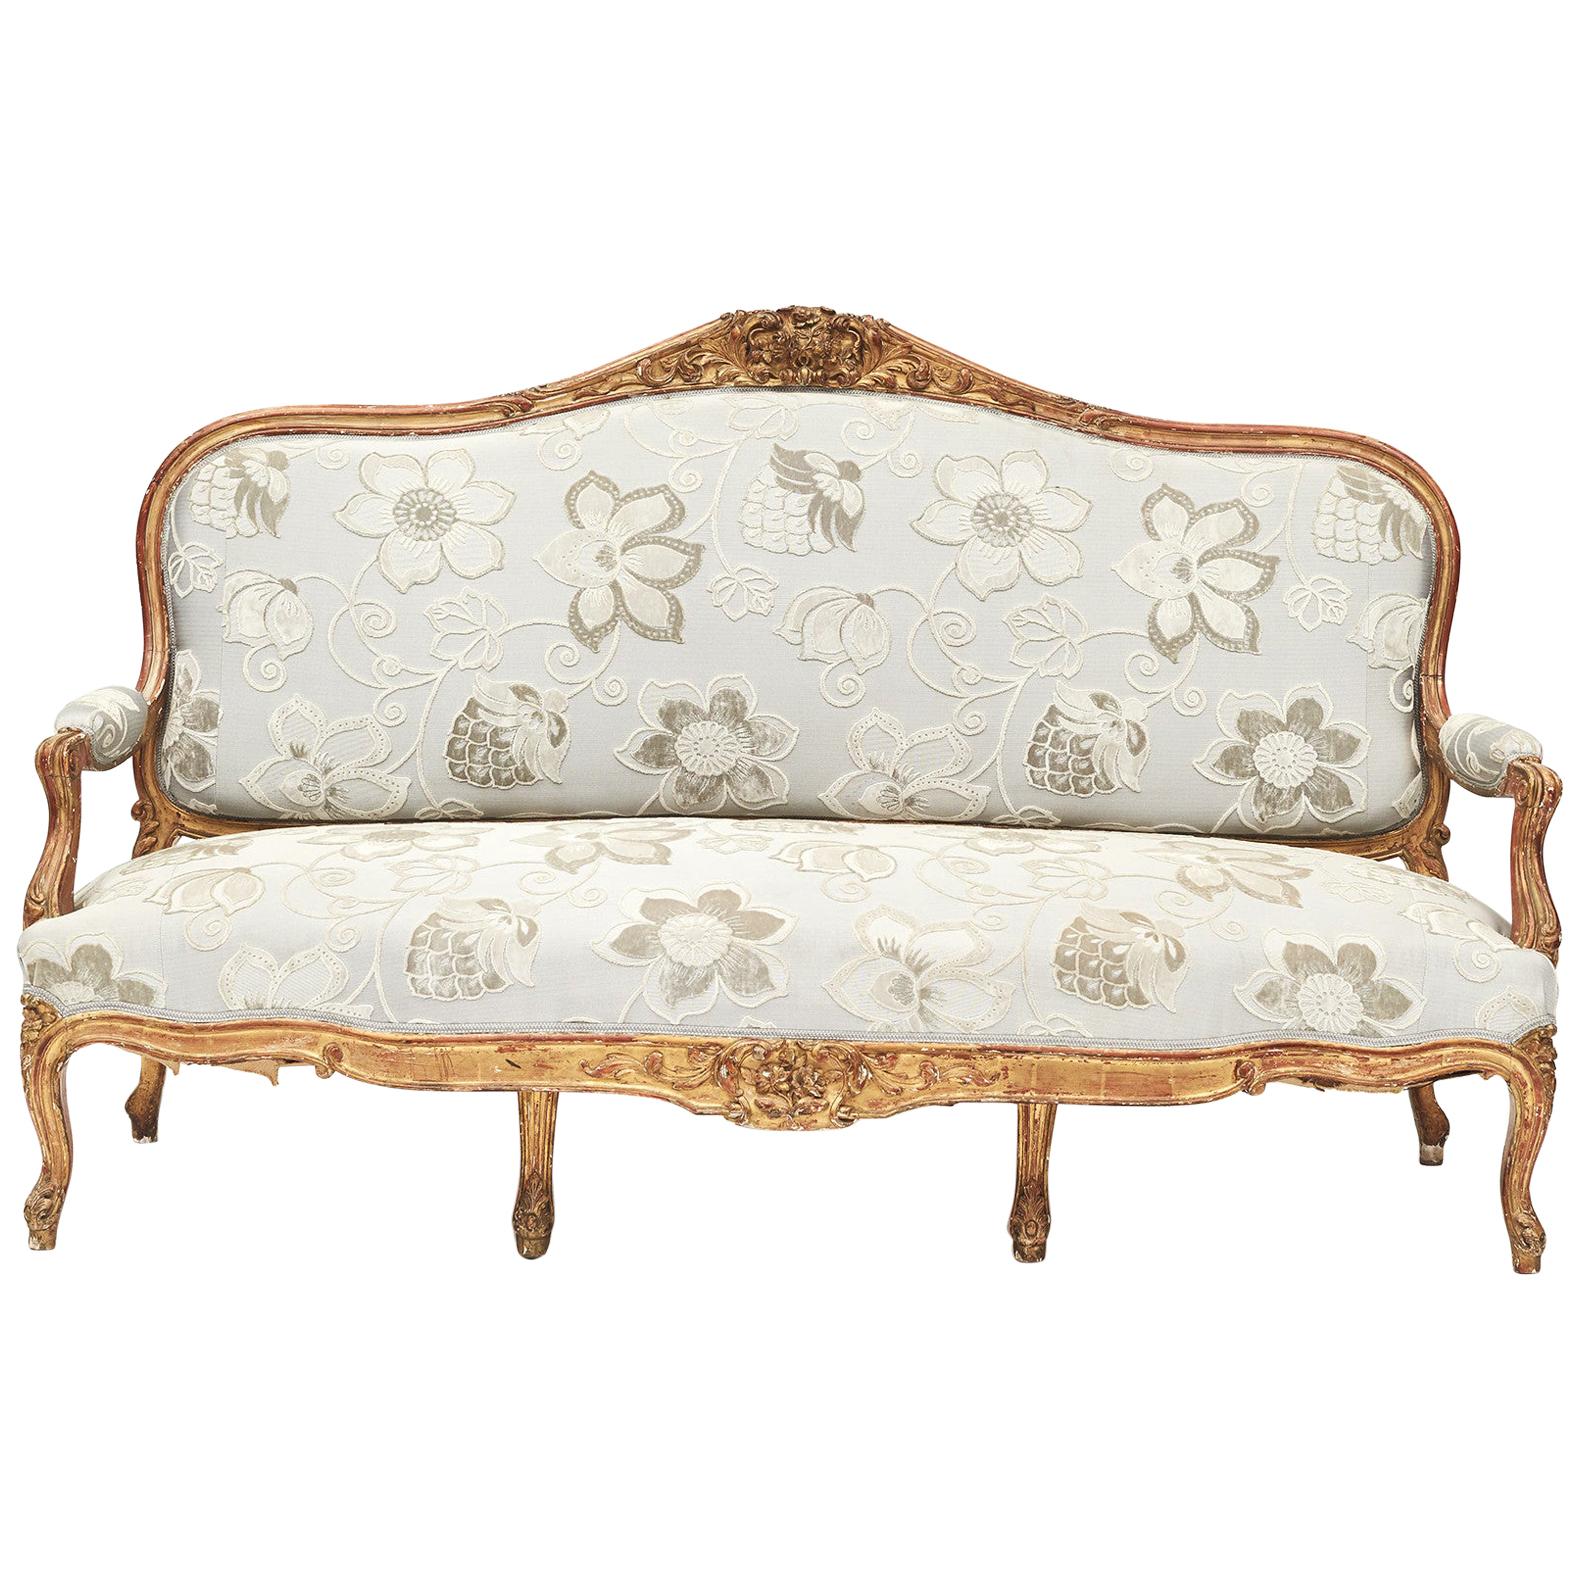 French Rococo Style Sofa Bench, circa 1850